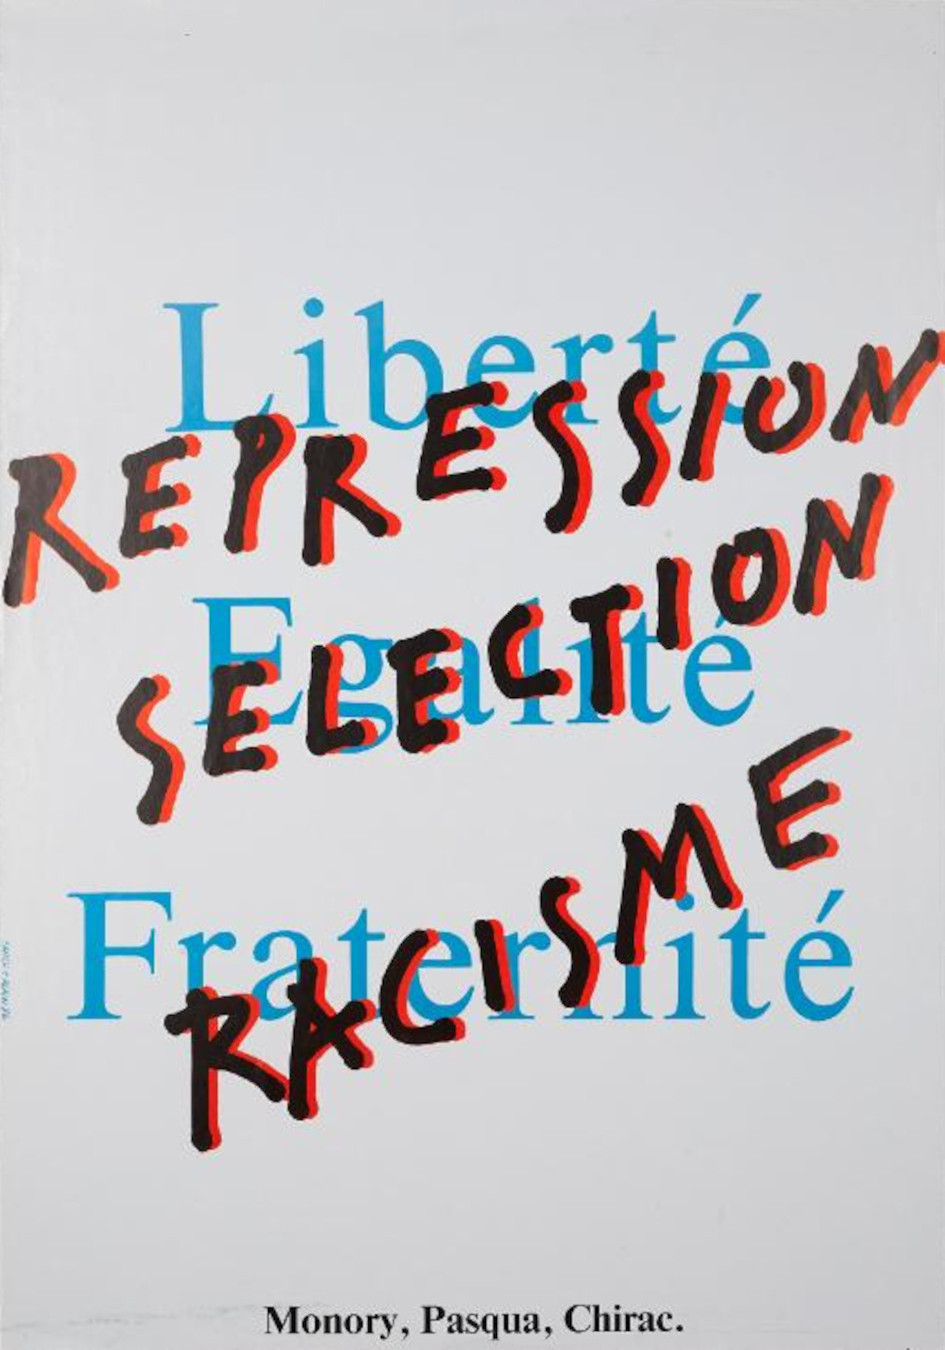 Liberté, Egalité, Fraternité. Répression, Sélection, Racisme. Affiche de Fañch Le Henaff et Alain Quernec (1986). Collections Musée de Bretagne, Rennes: 2010.0032.21, ©Tous droits réservés.